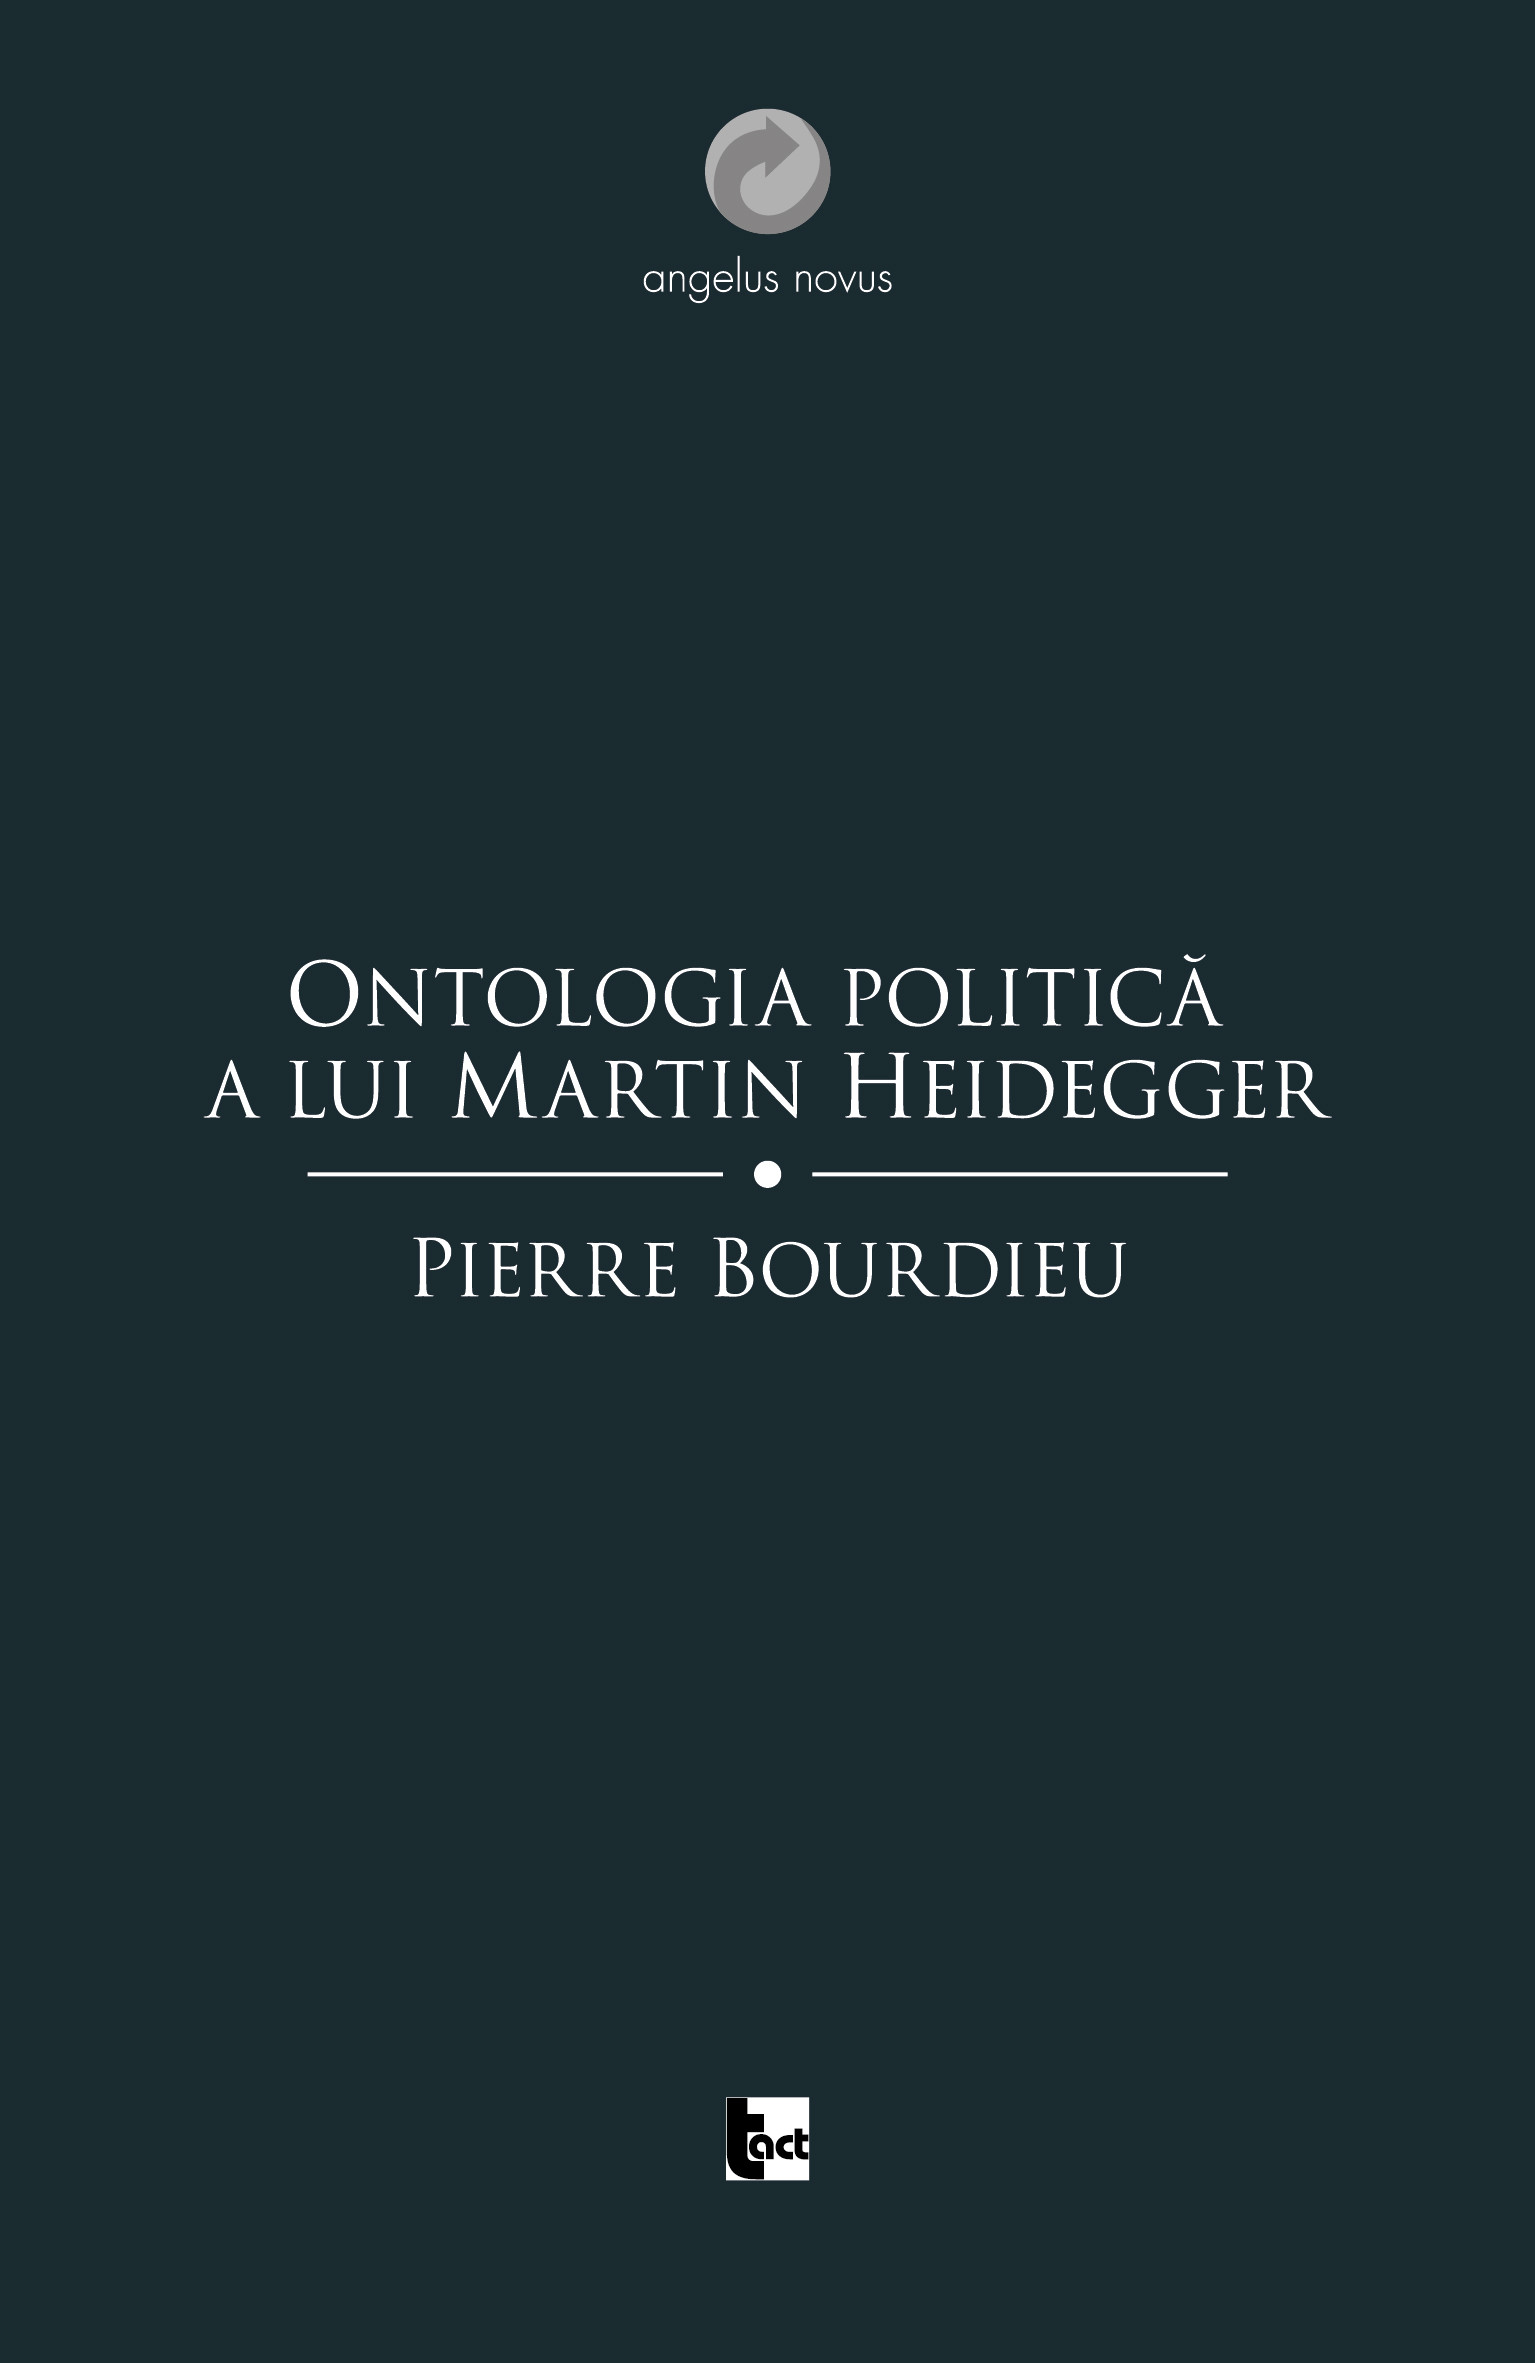 Ontologia politica a lui Martin Heidegger | Pierre Bourdieu carturesti.ro imagine 2022